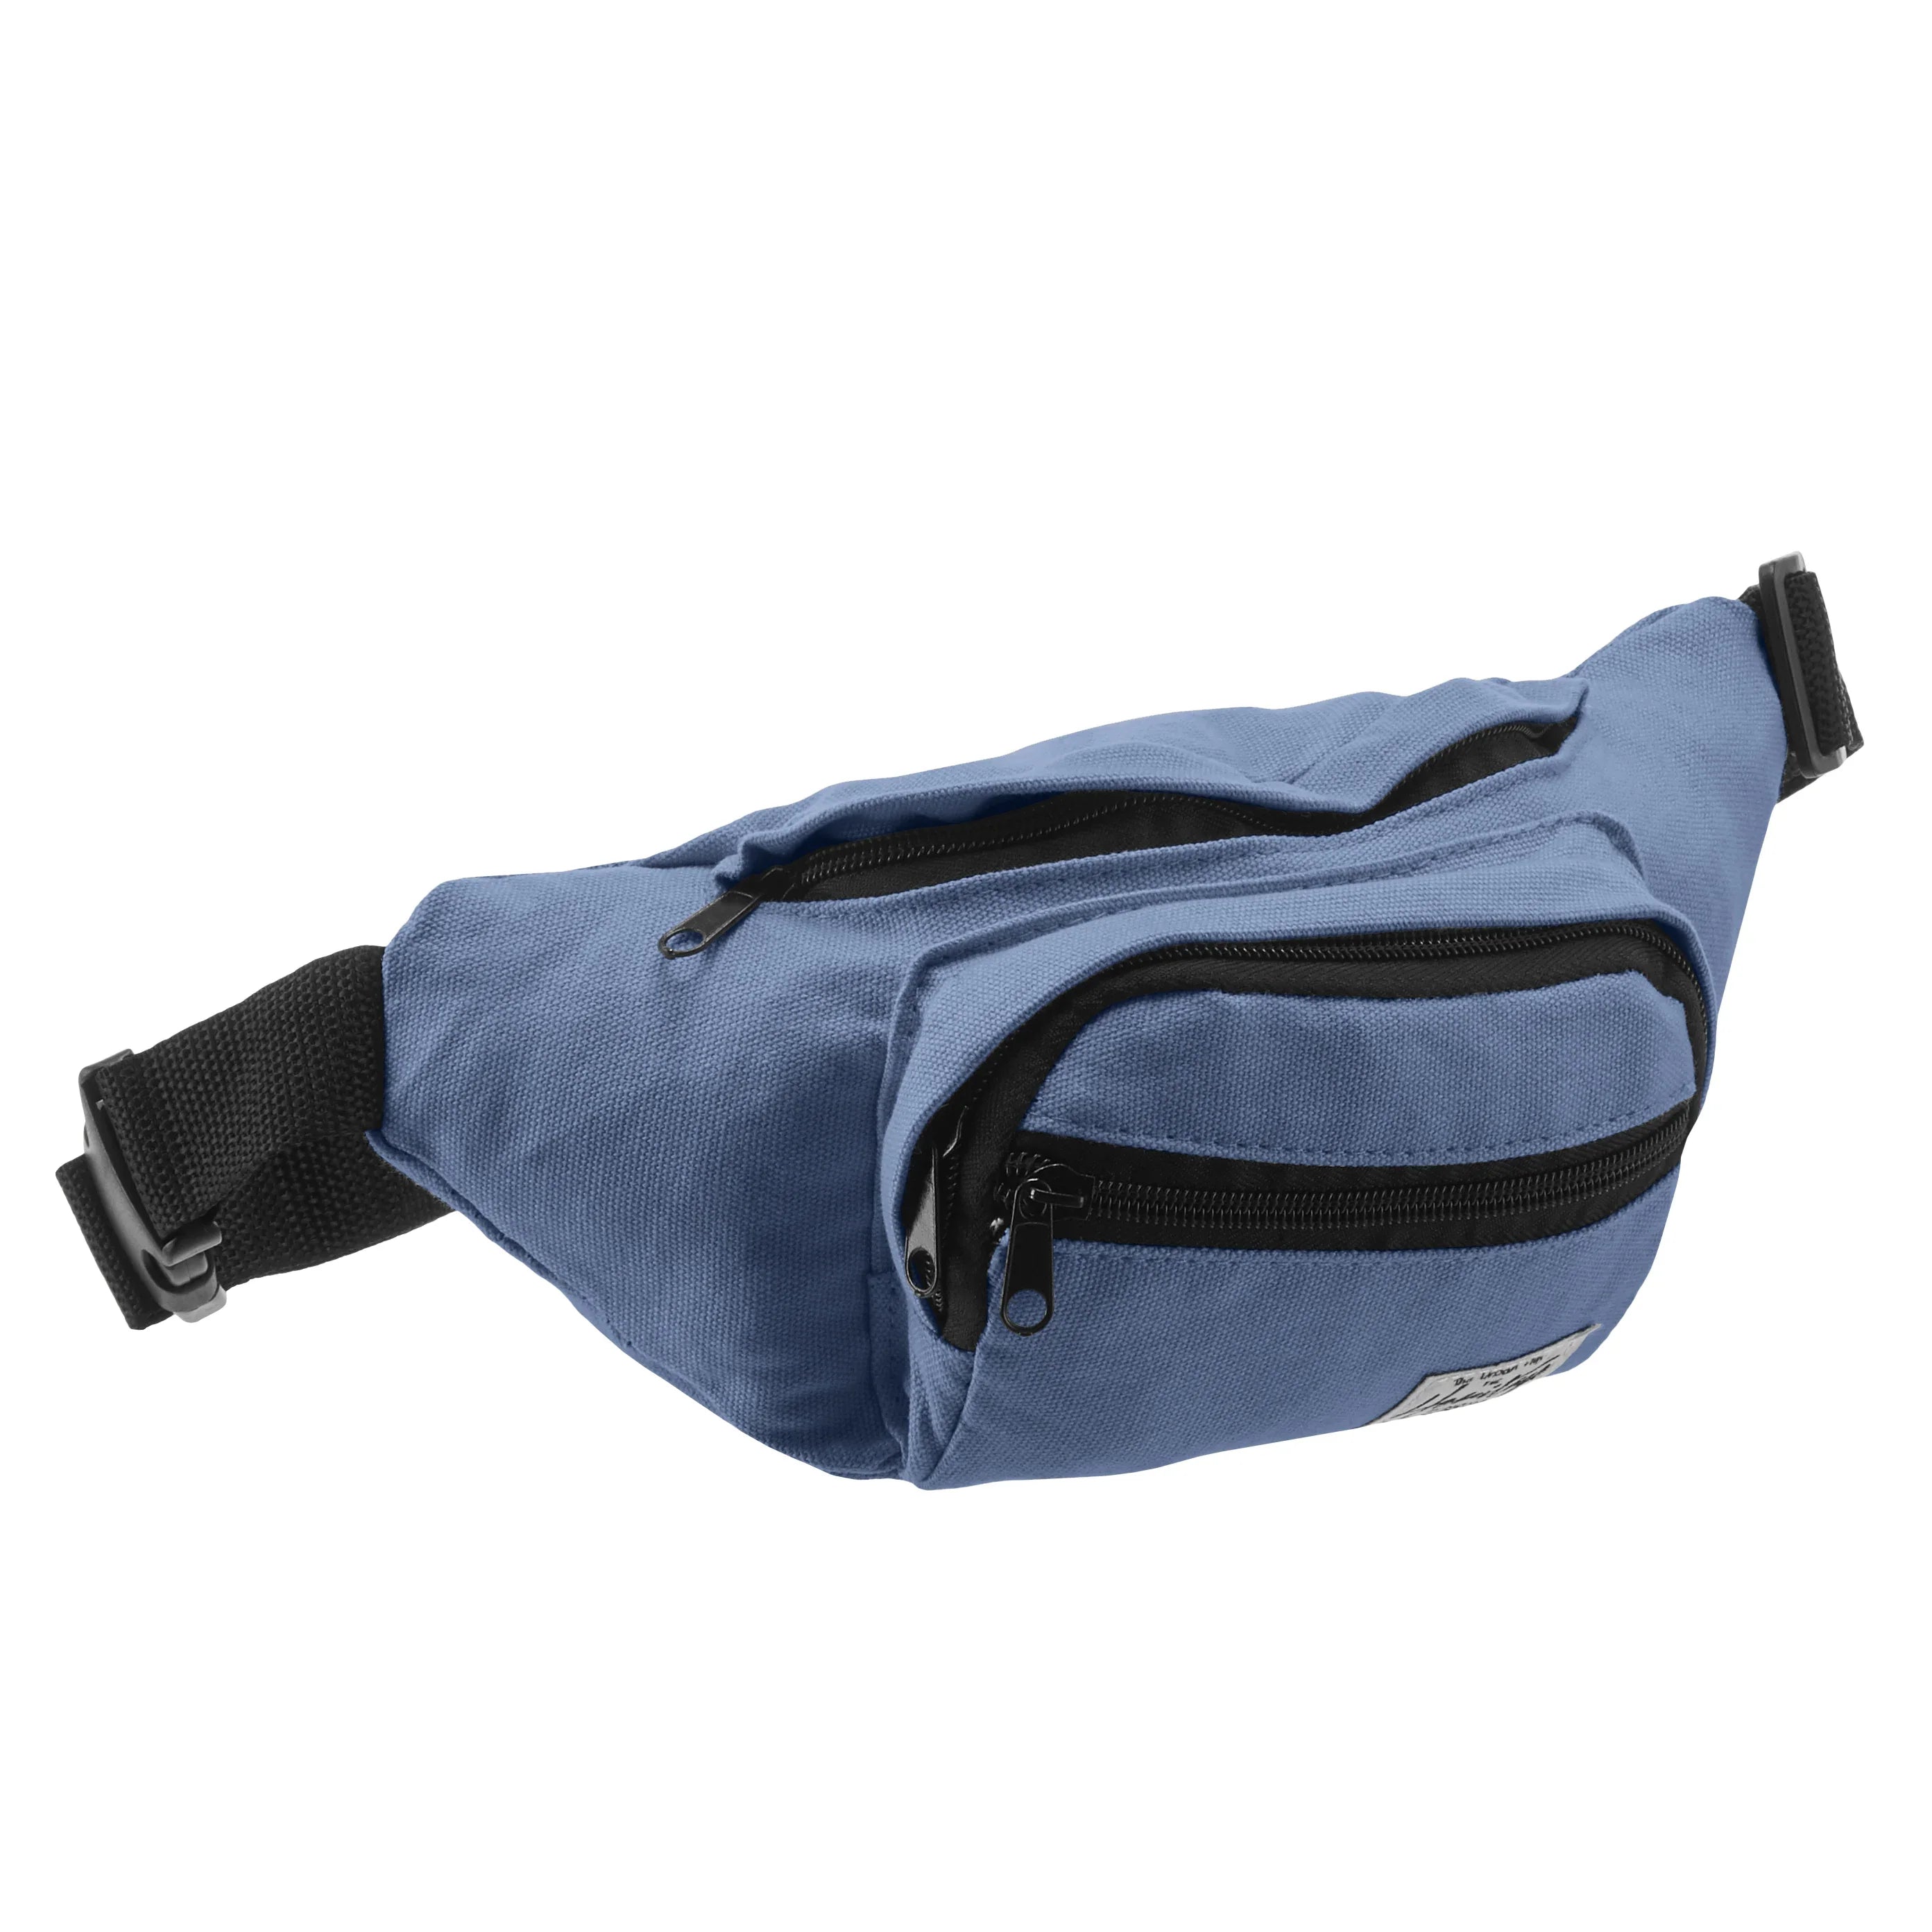 Nowi Heritage belt bag 26 cm - blue